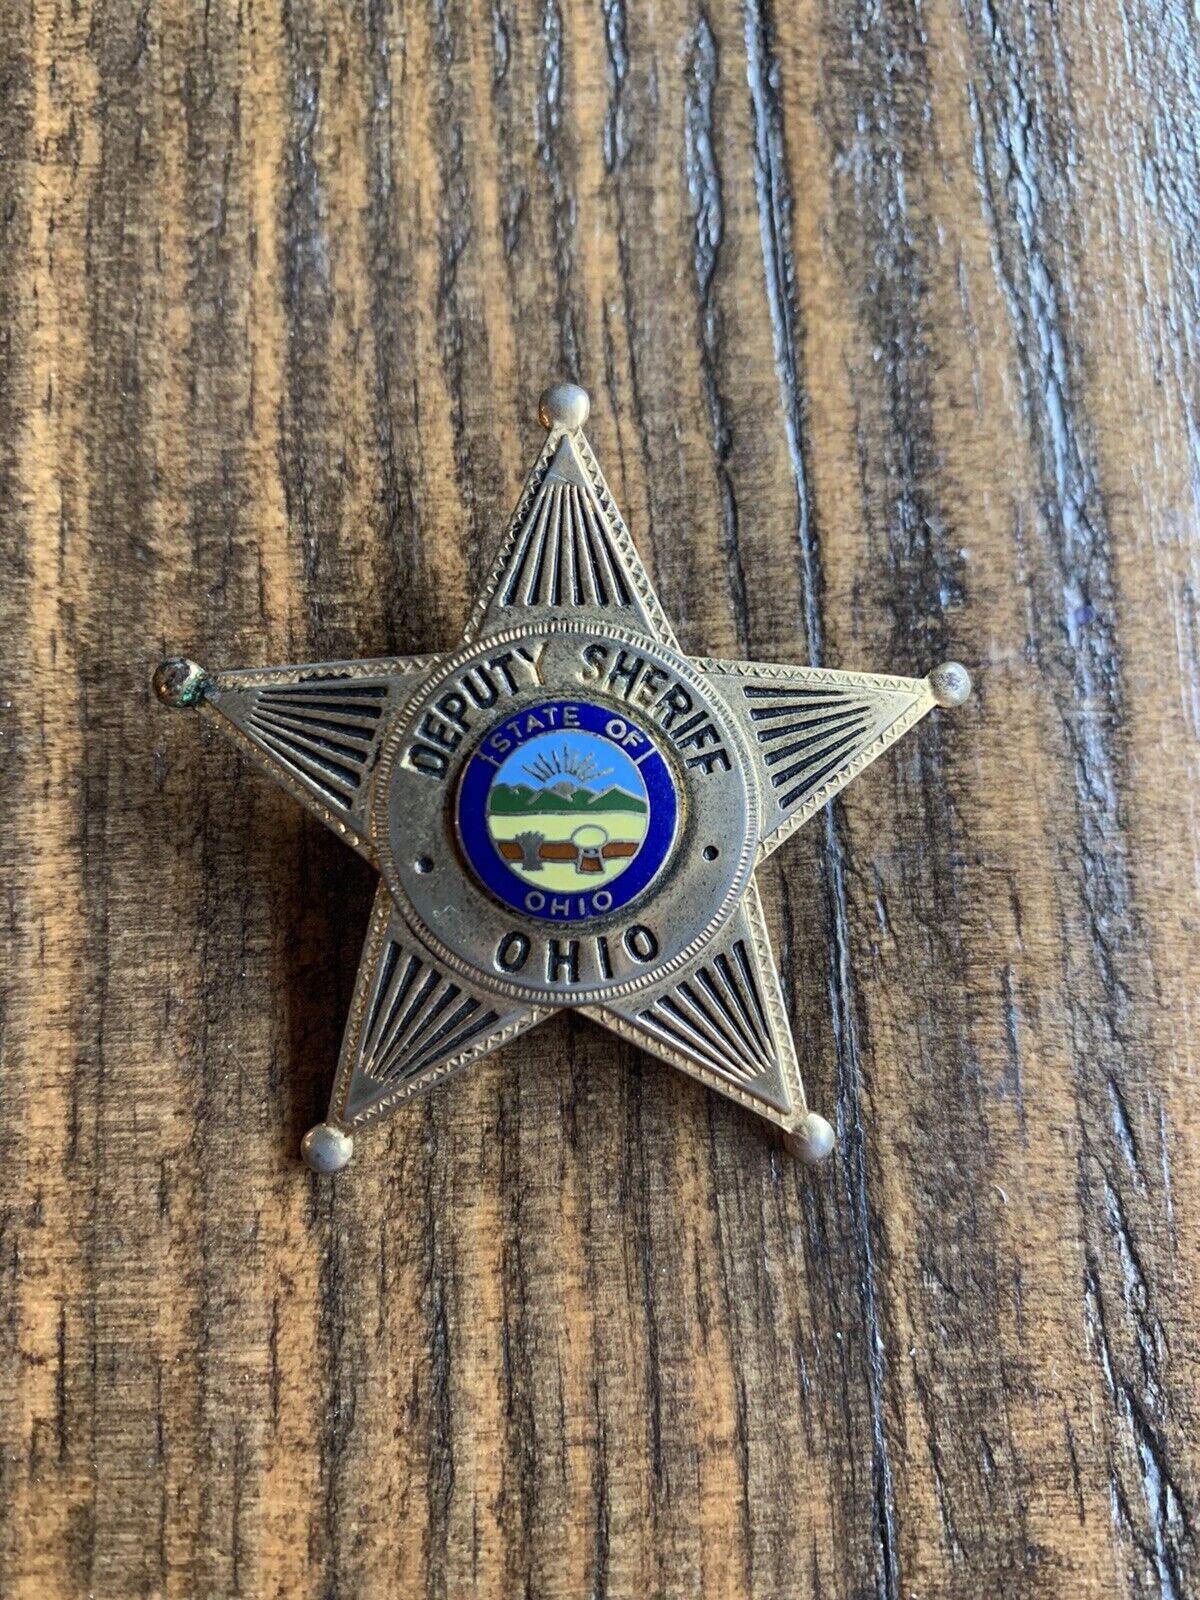 Vintage Ohio Deputy Sheriff’s Badge